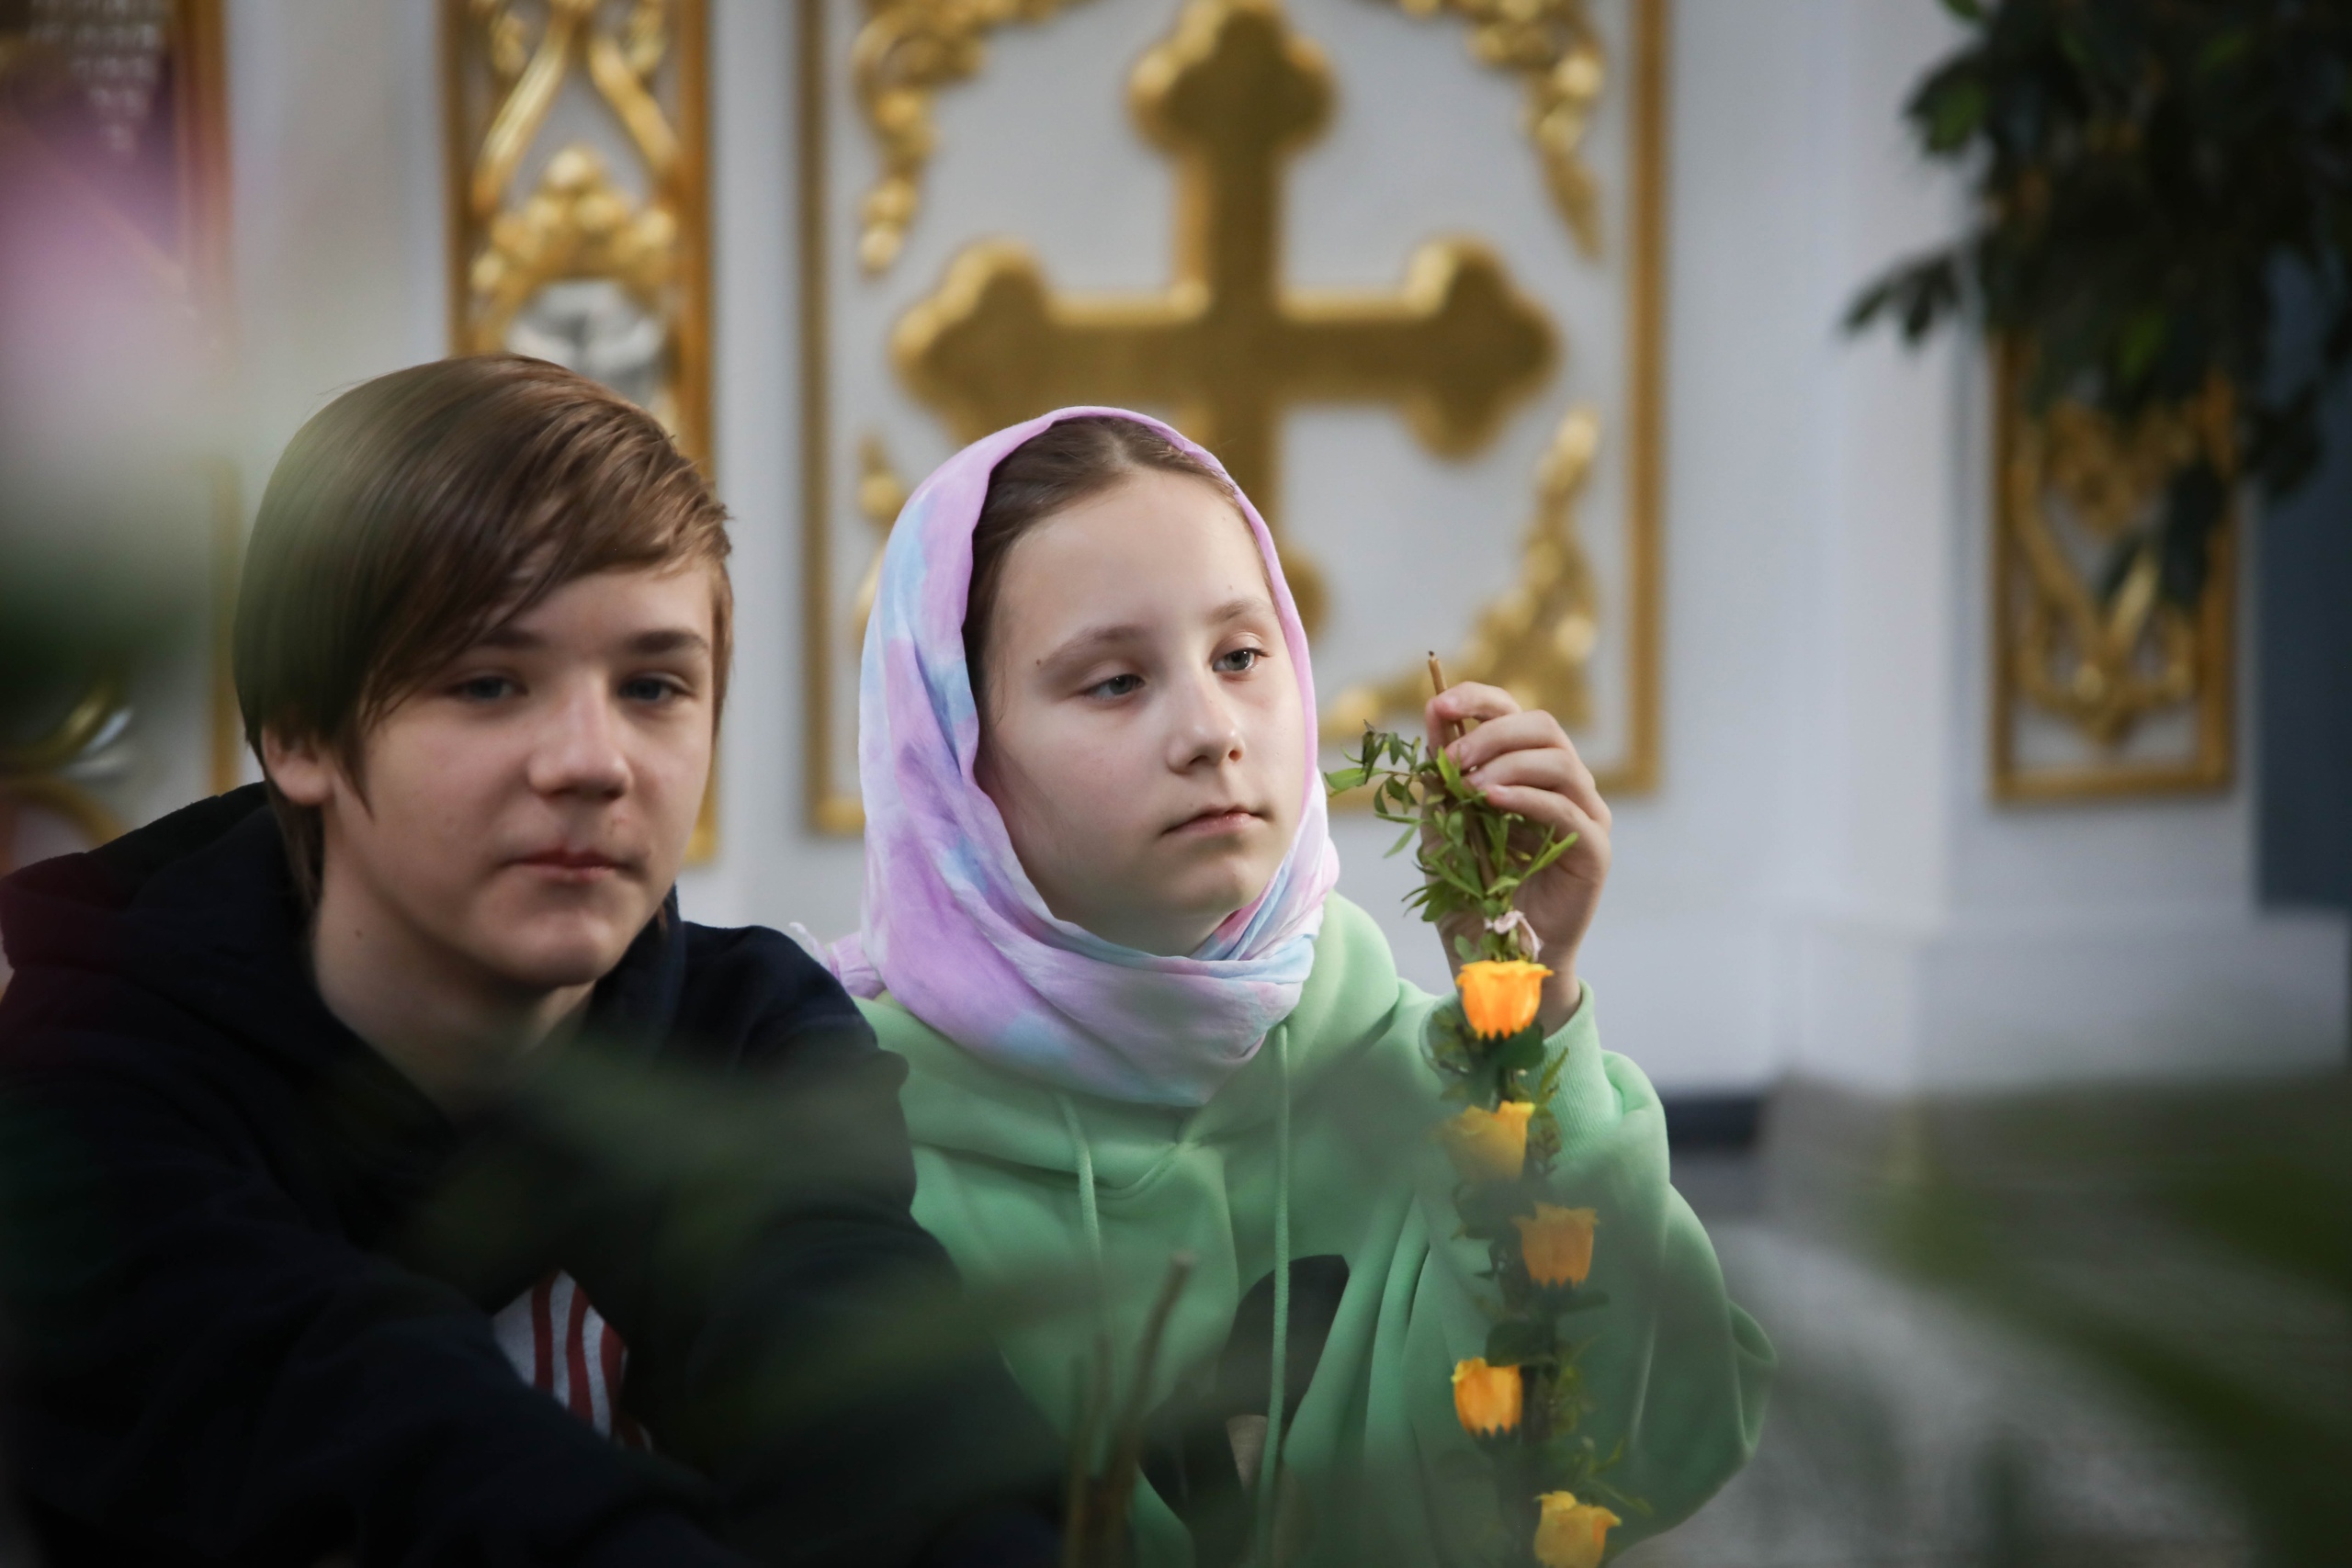 Смотрите, как православные верующие празднуют Вербное воскресенье. Фоторепортаж из храма в Сморгони